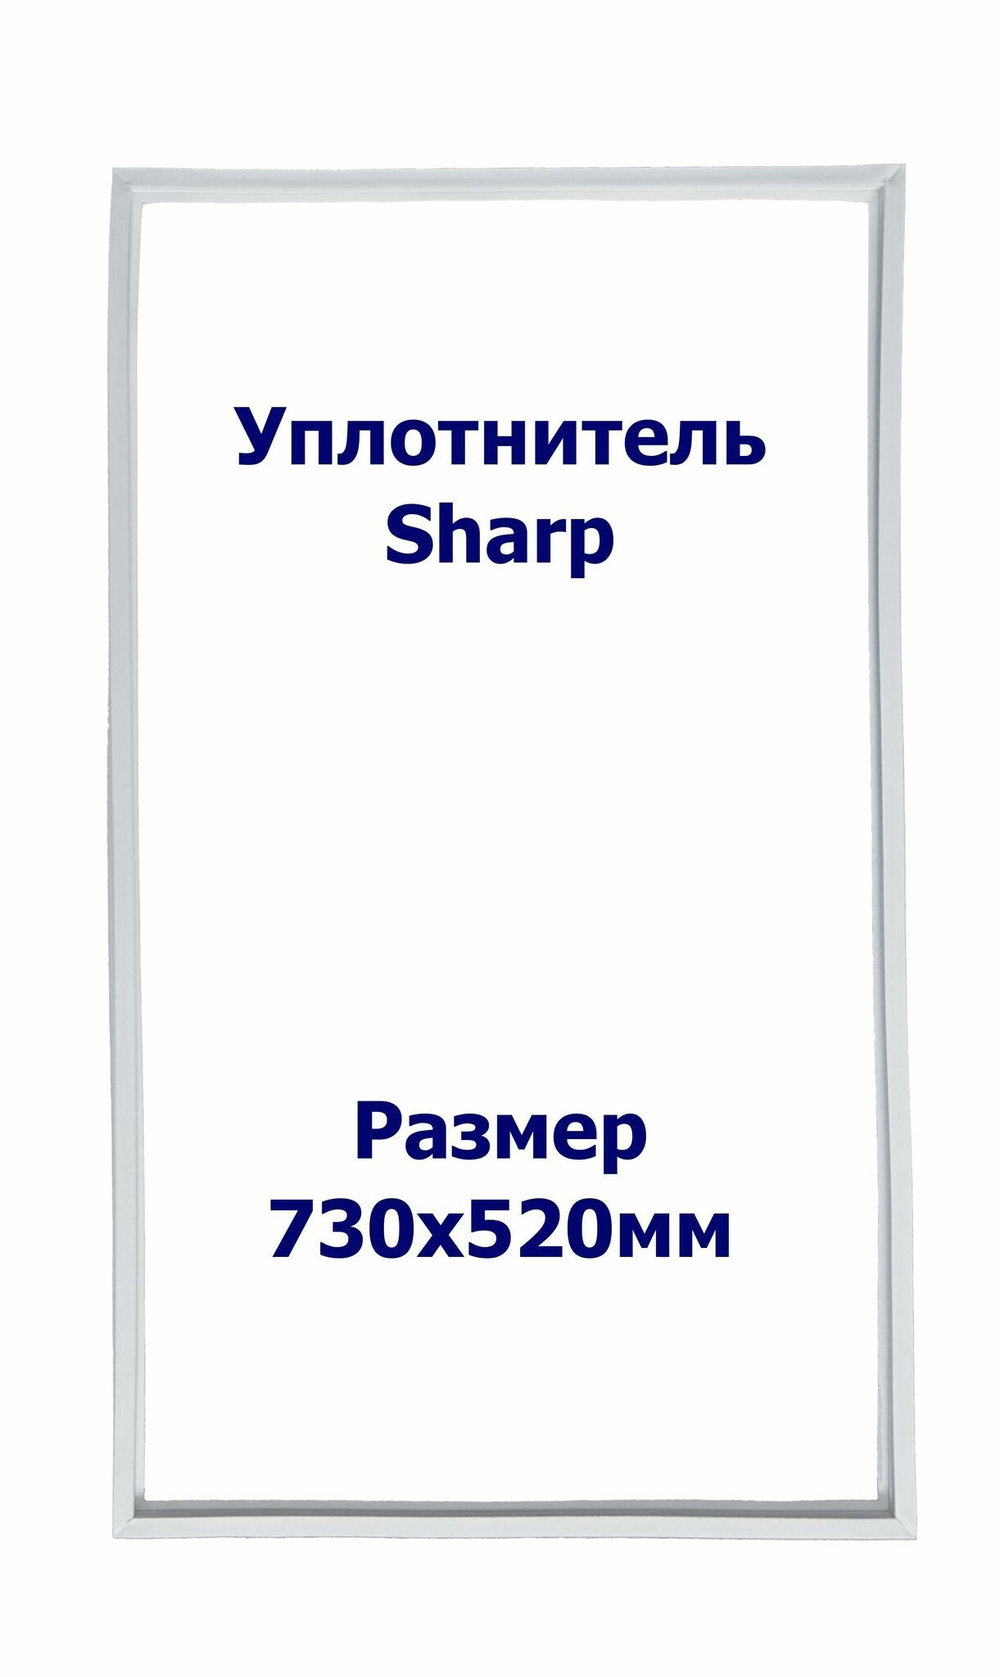 Уплотнитель Sharp SJ-P642N-BE. м.к., Размер - 730х520 мм. SK